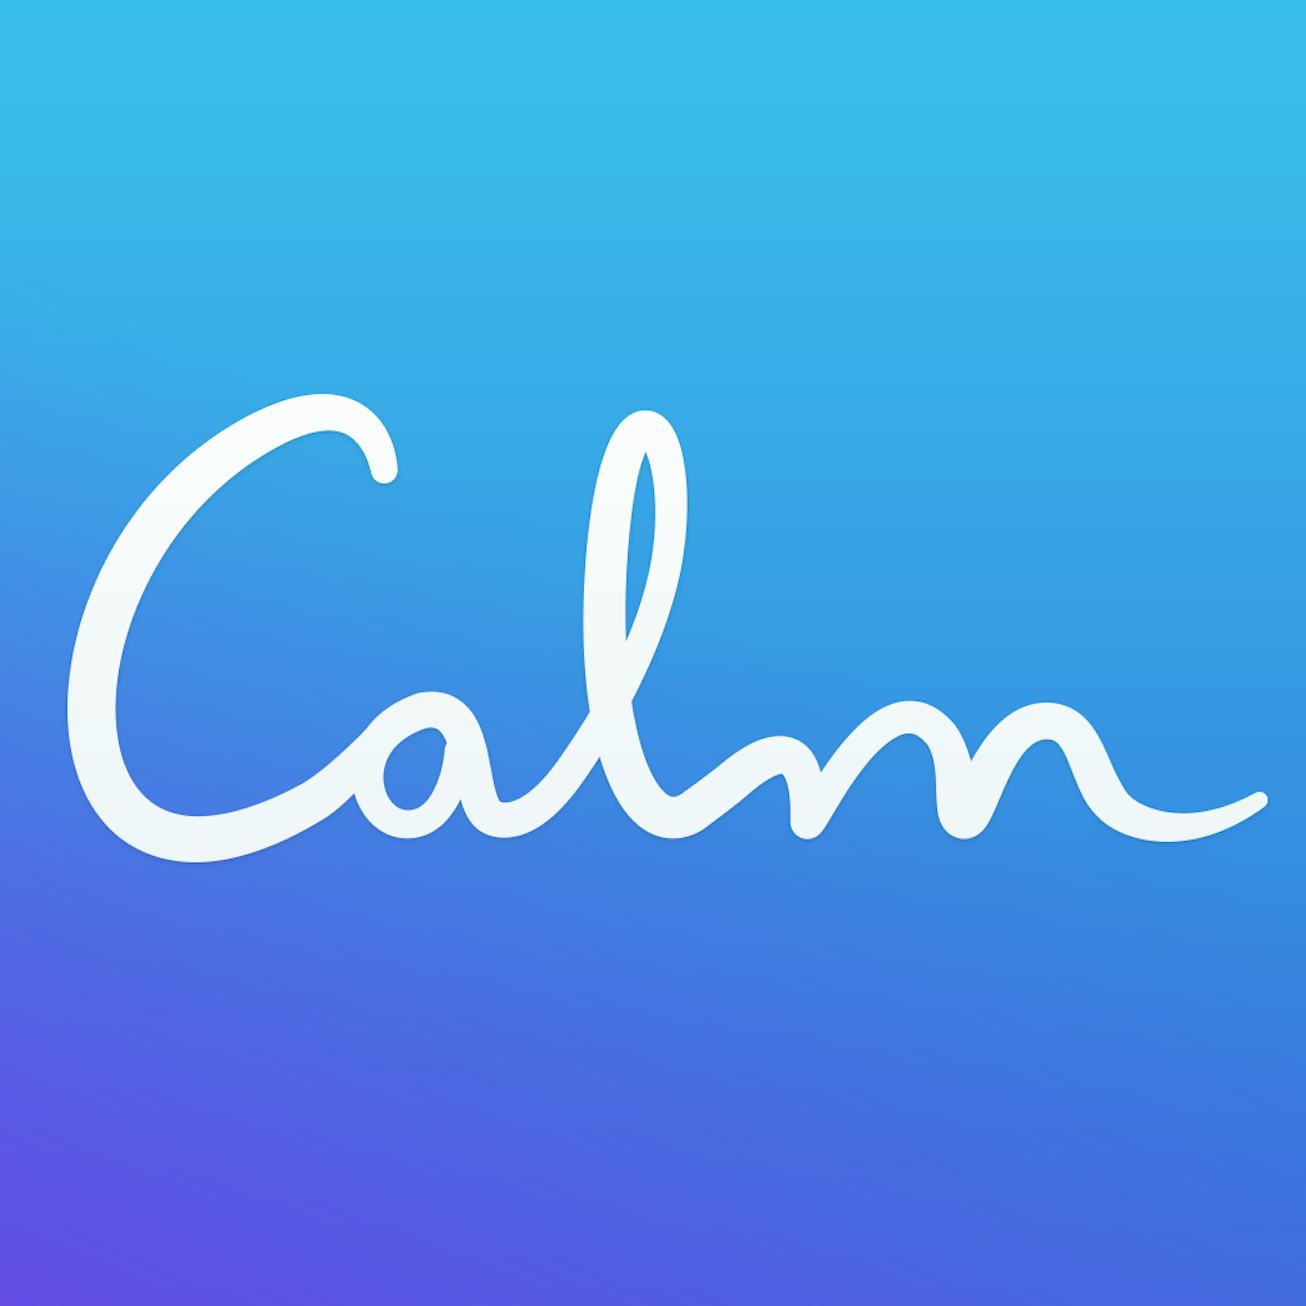 The Calm app logo.